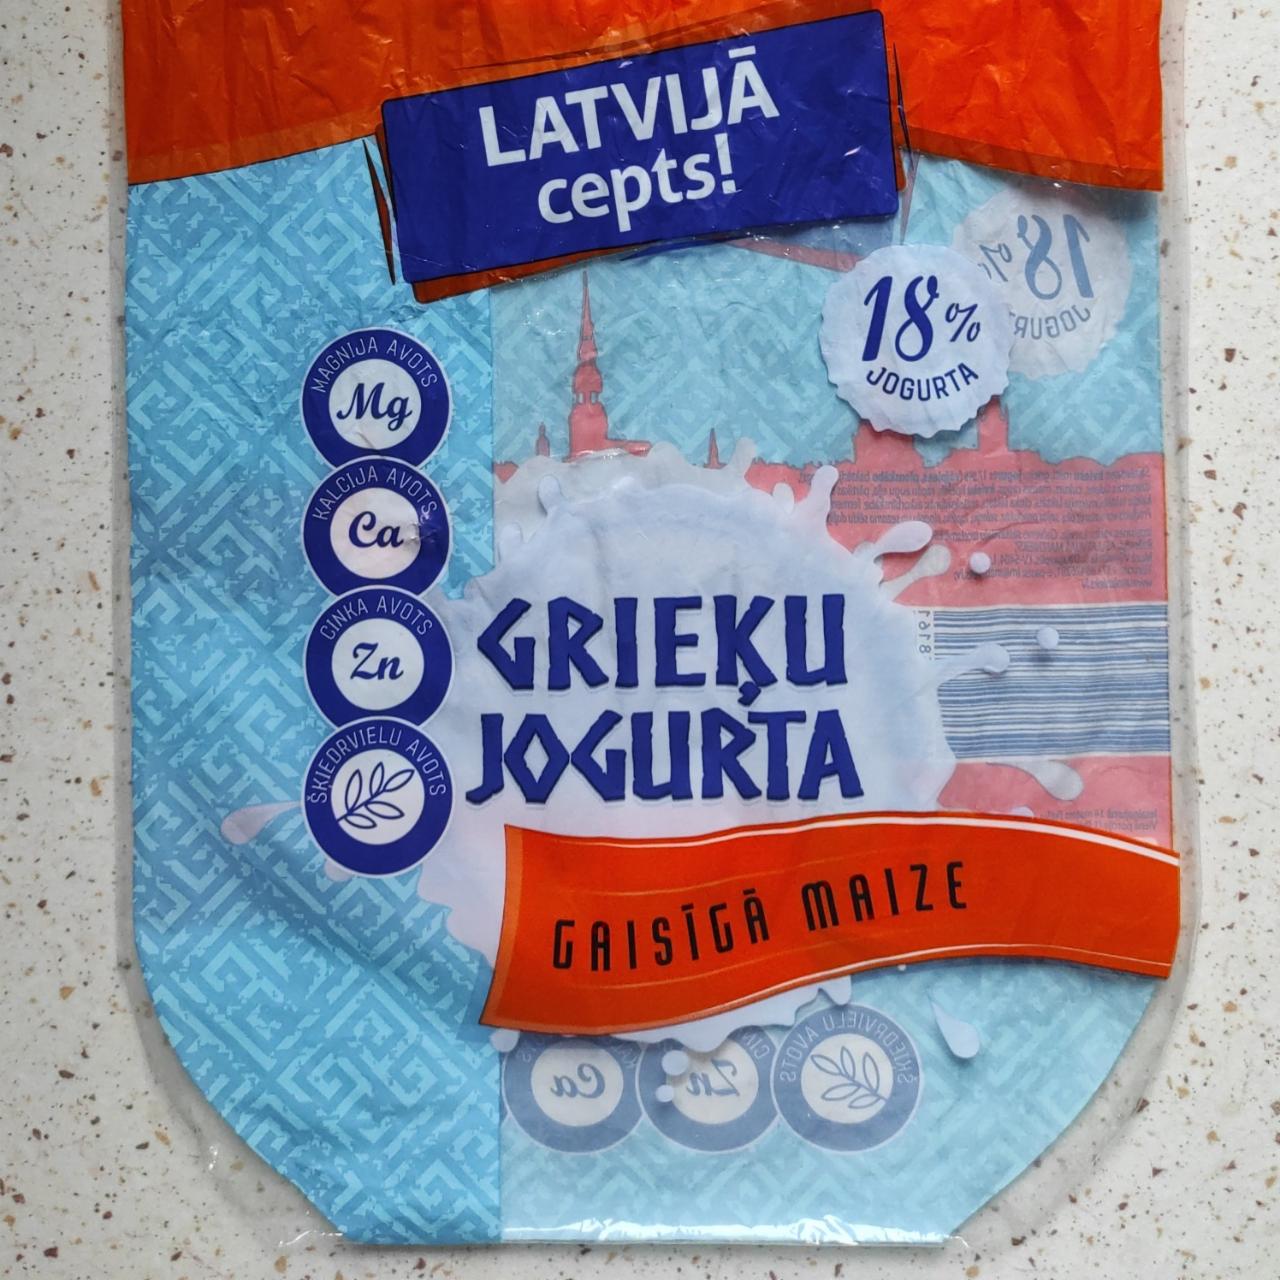 Фото - maiznieks grieķu jogurta Latvijas cepsts!